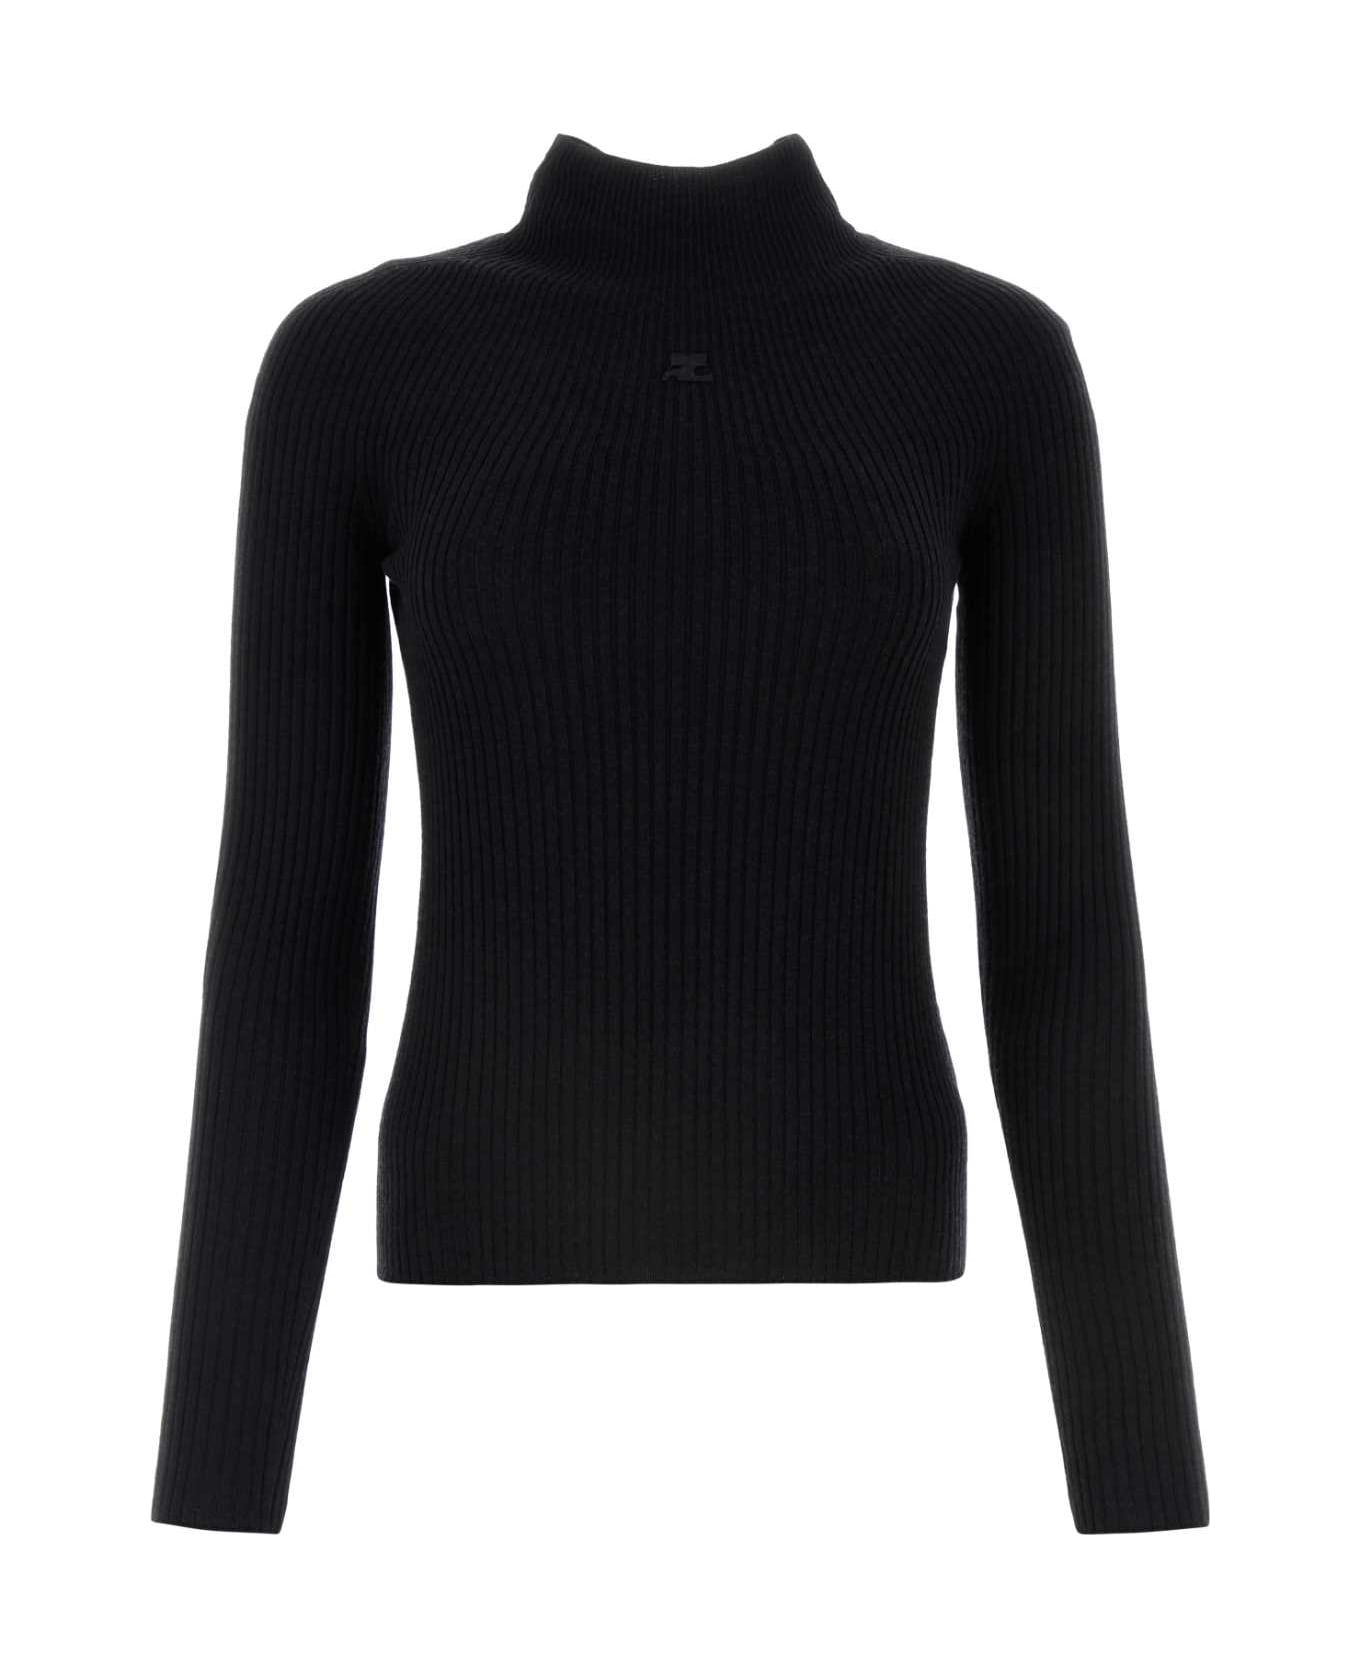 Courrèges Black Cotton Blend Sweater - Black